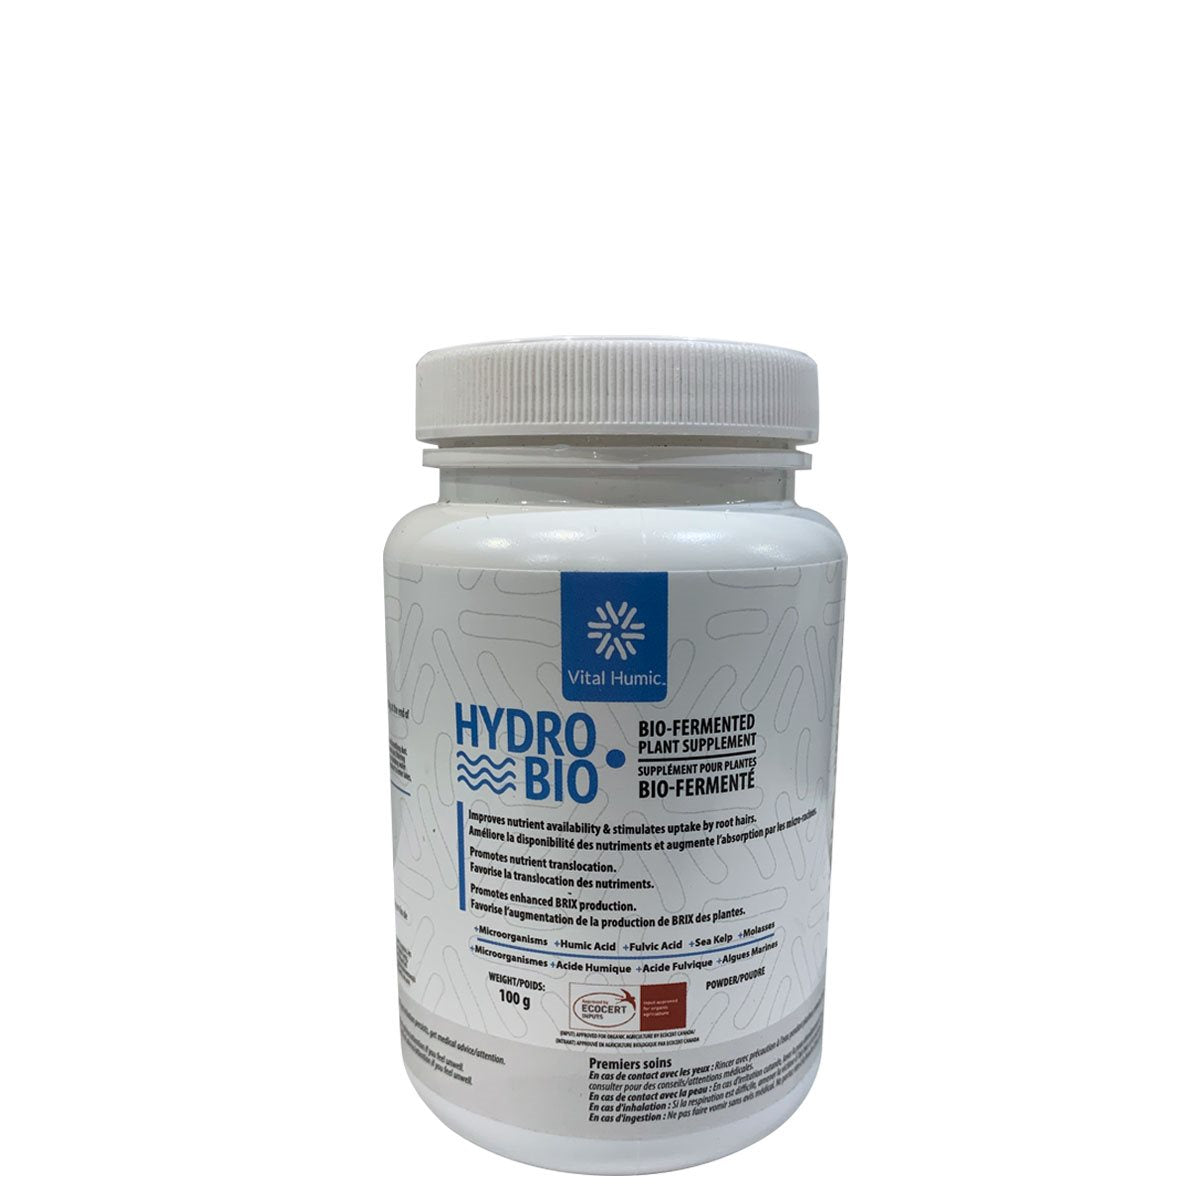 Vital Humic Hydro Bio